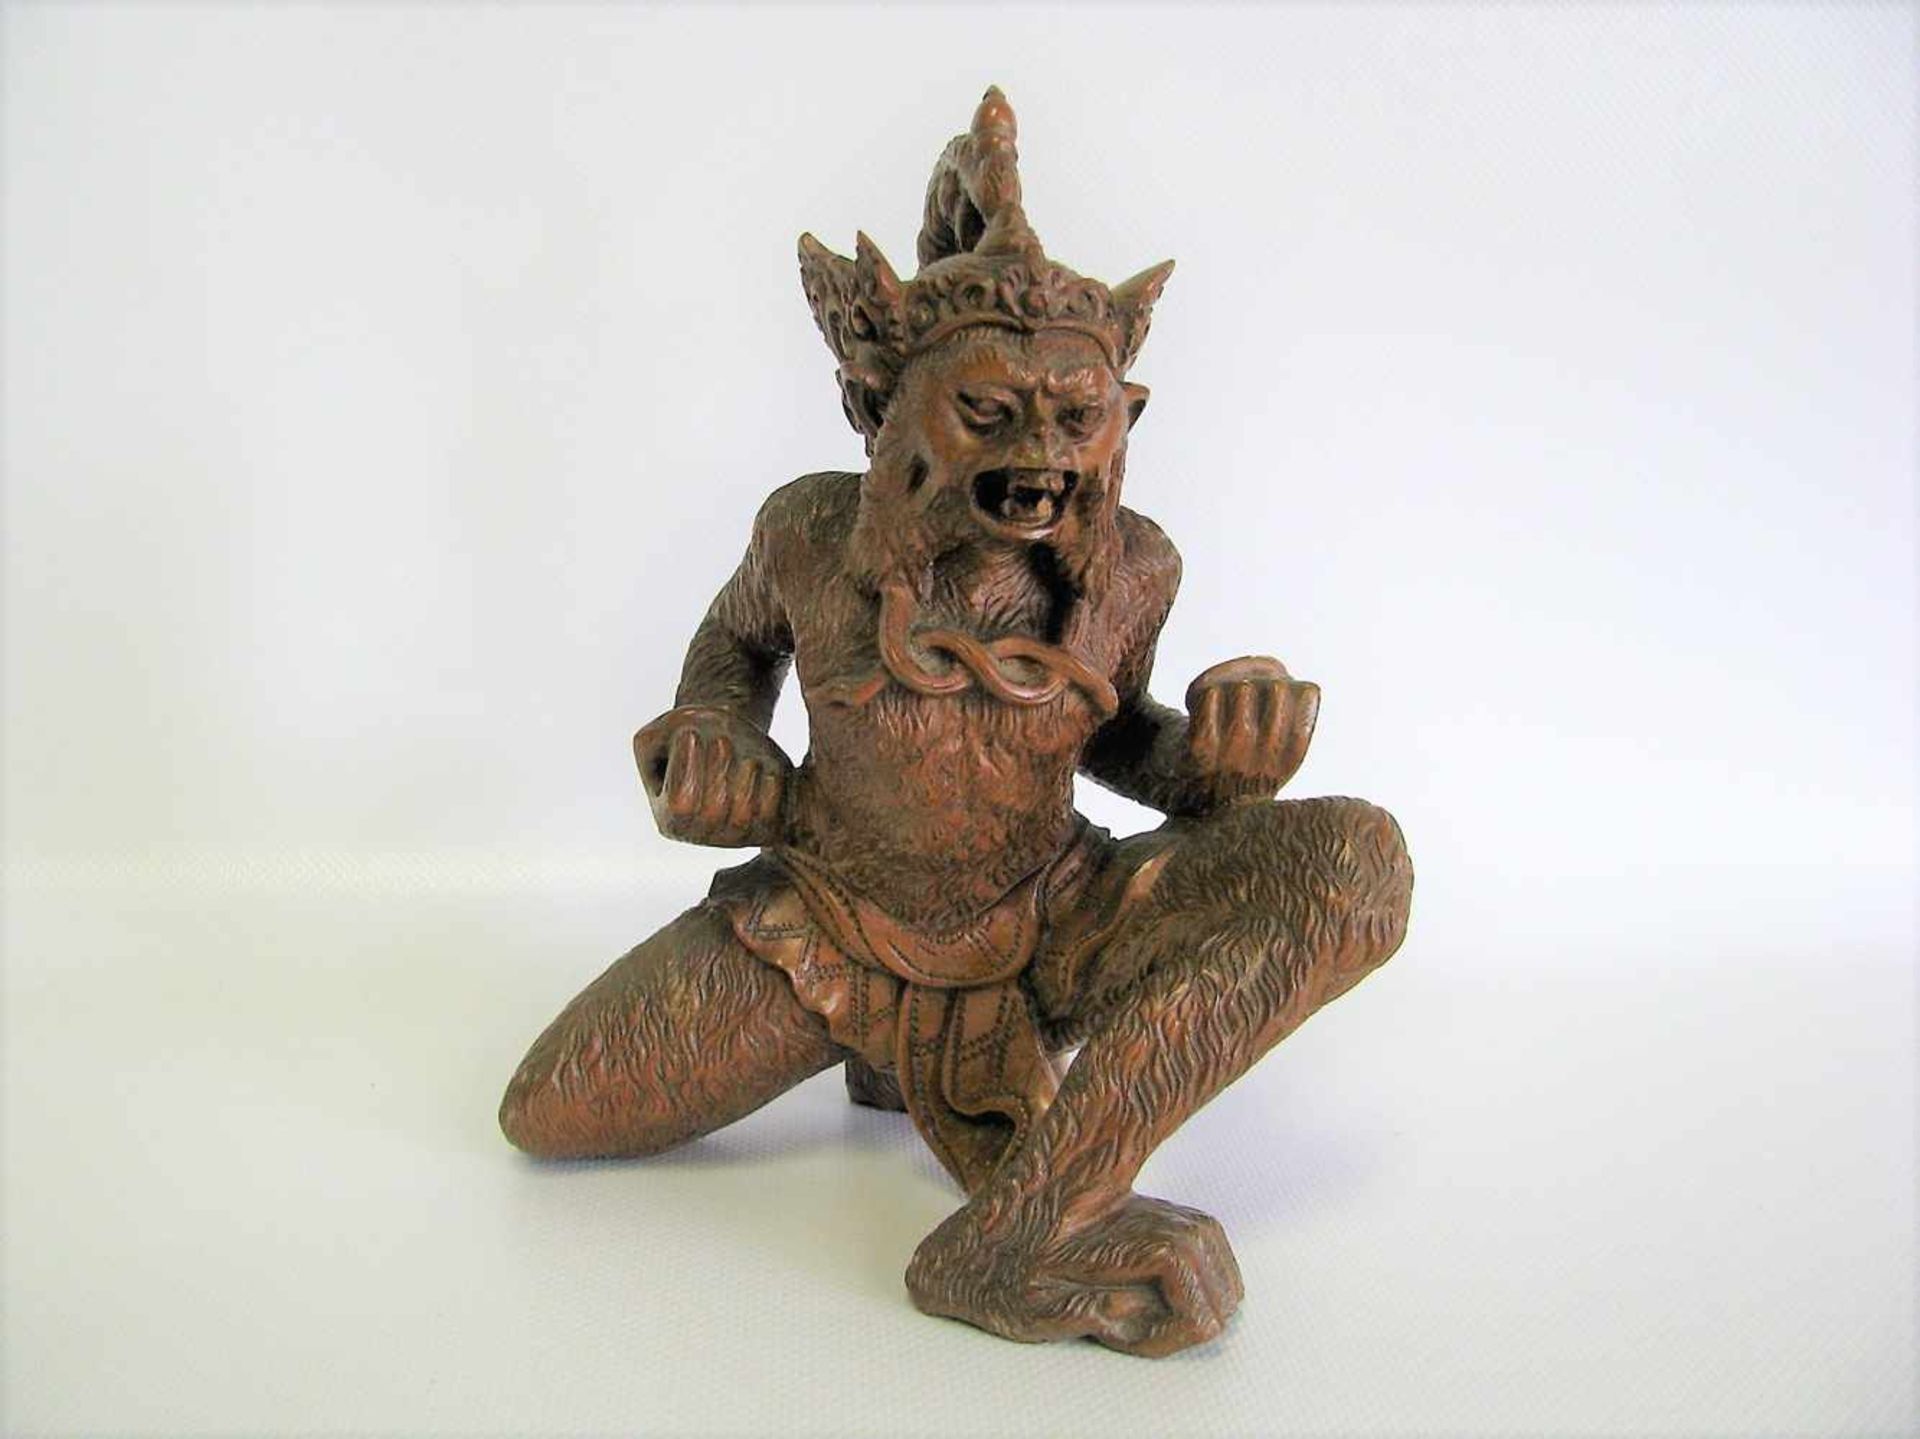 Dämonenfigur in Form eines Affen, Indonesien, wohl Bali, Holz fein beschnitzt, 18 x 15 x 13,5 cm.